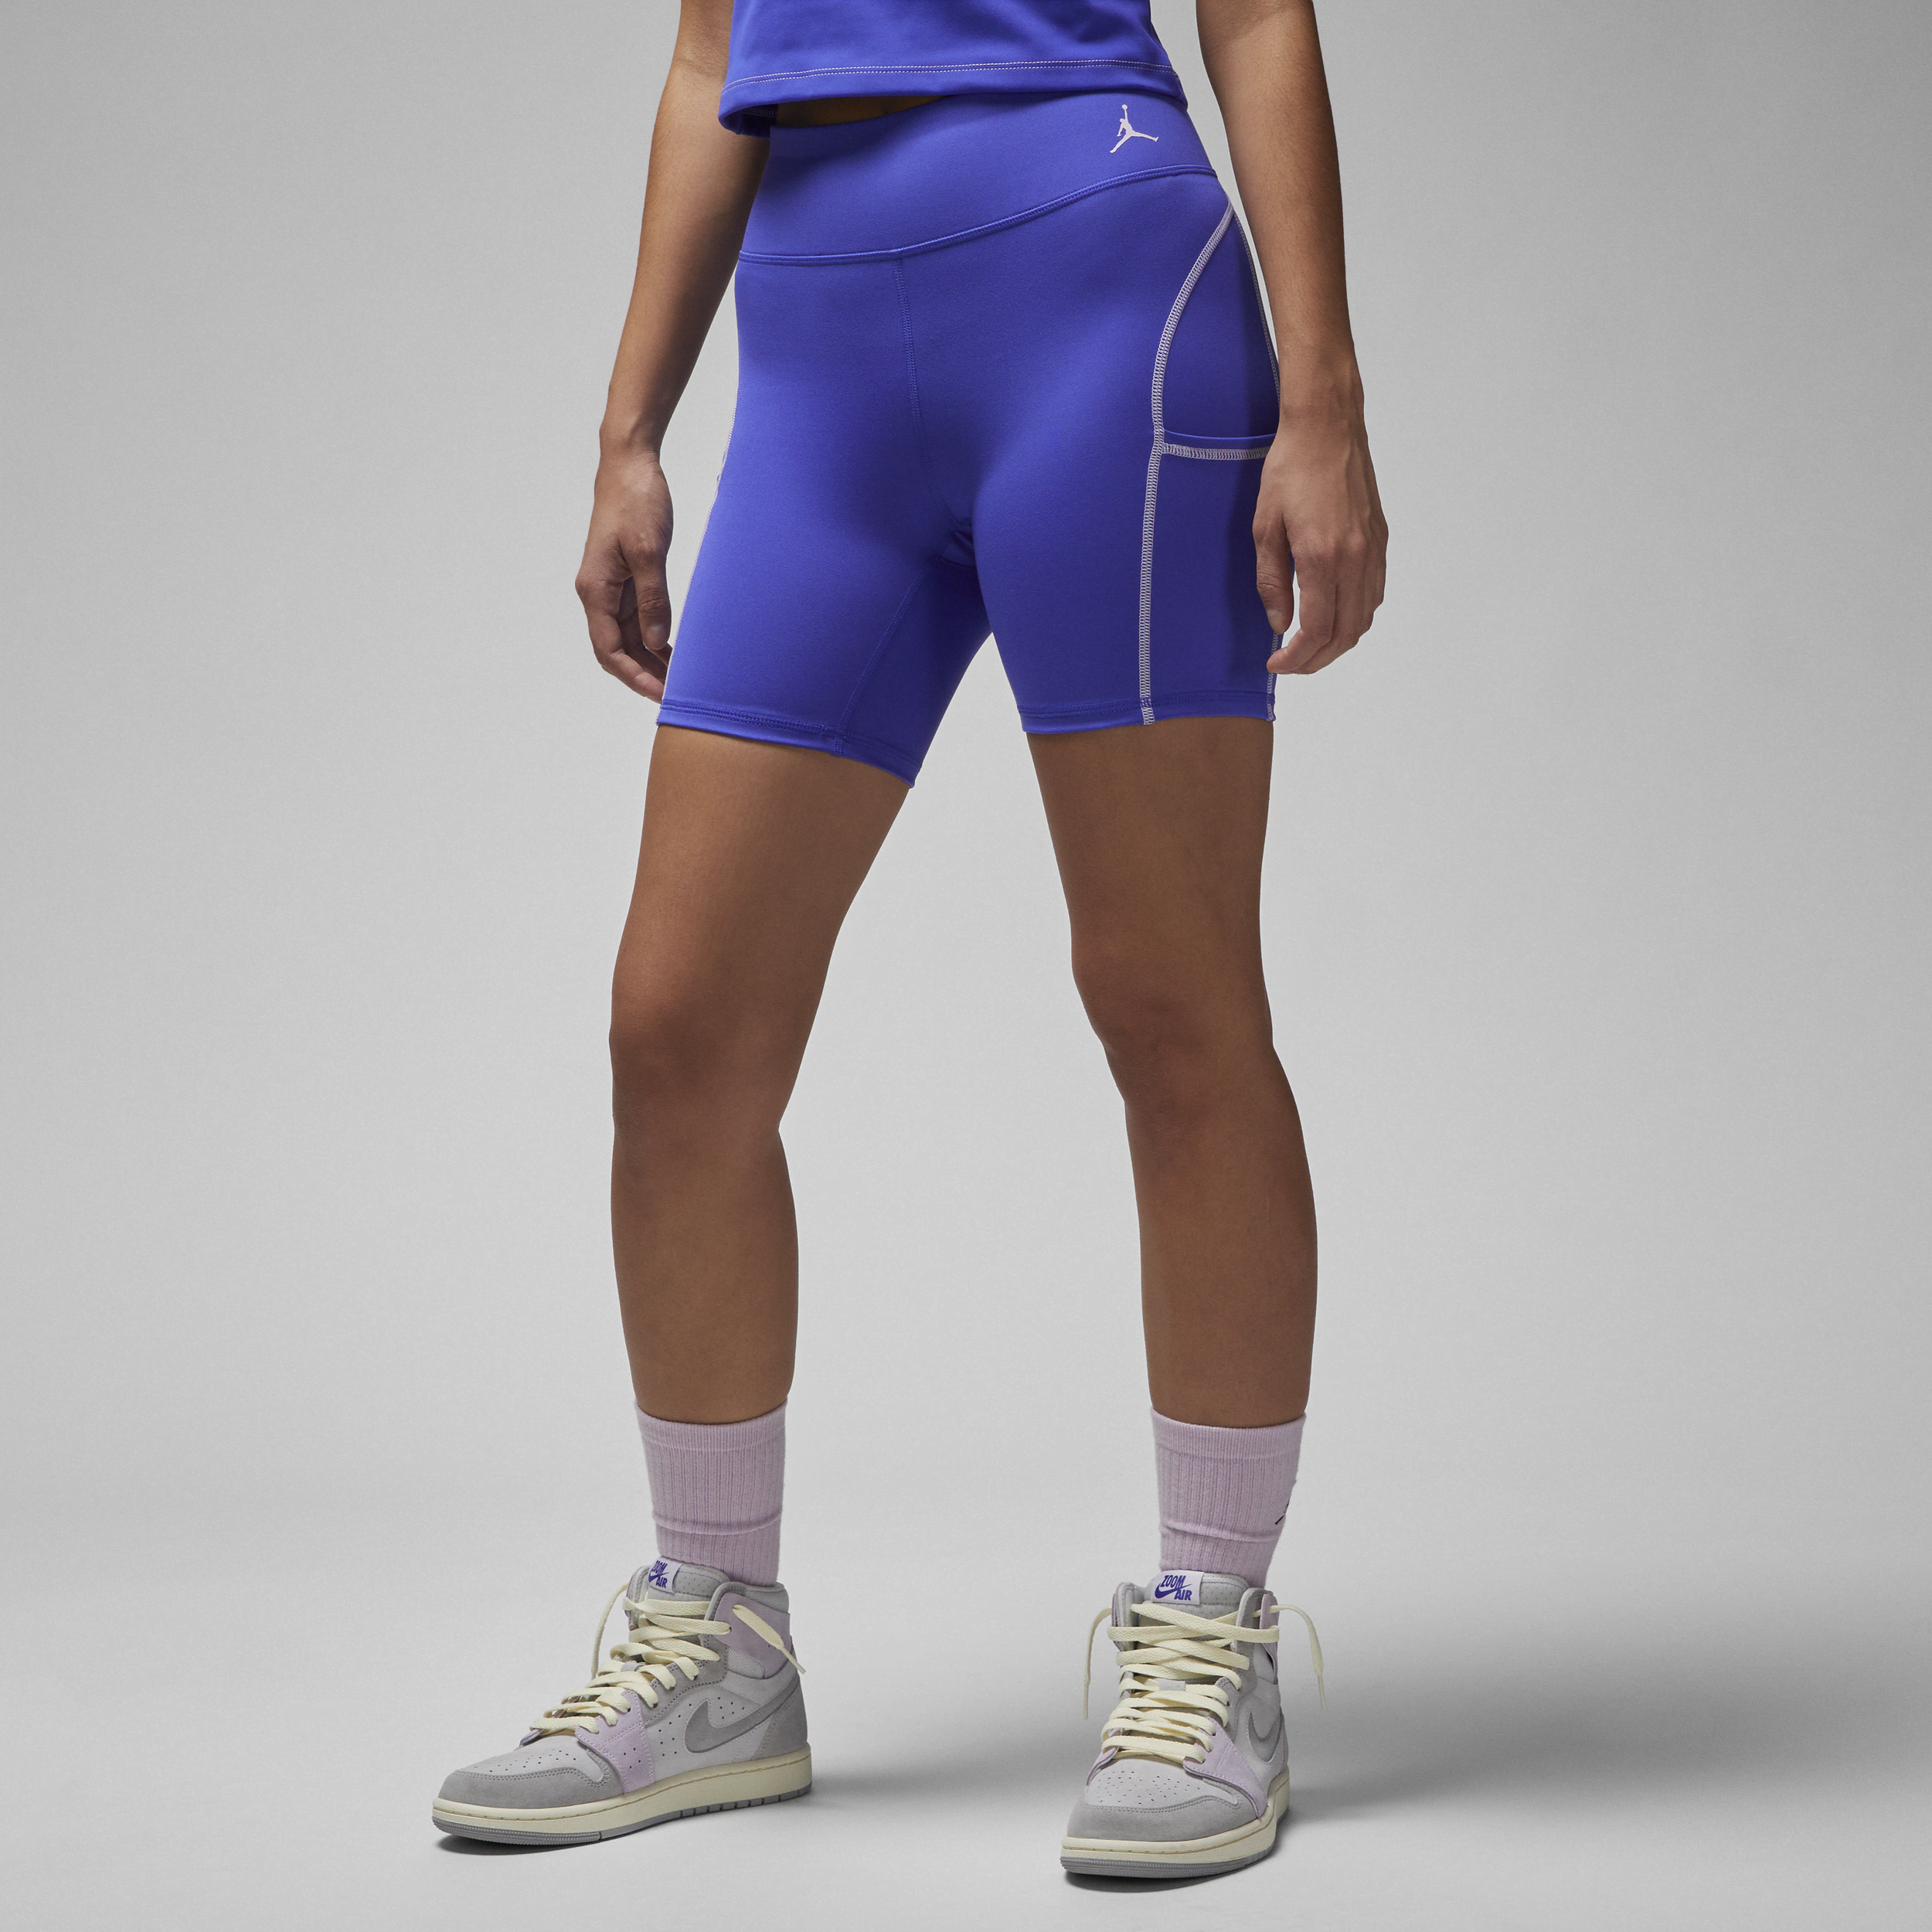 Jordan Sport-shortsene til kvinder - blå